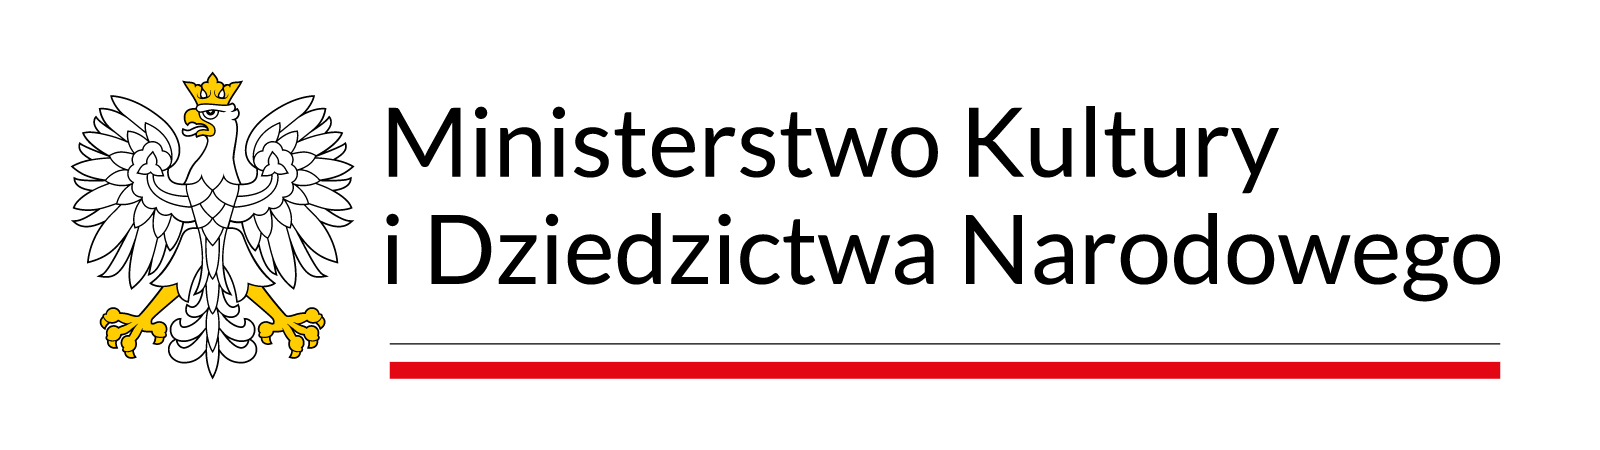 Partnerstwo logotyp